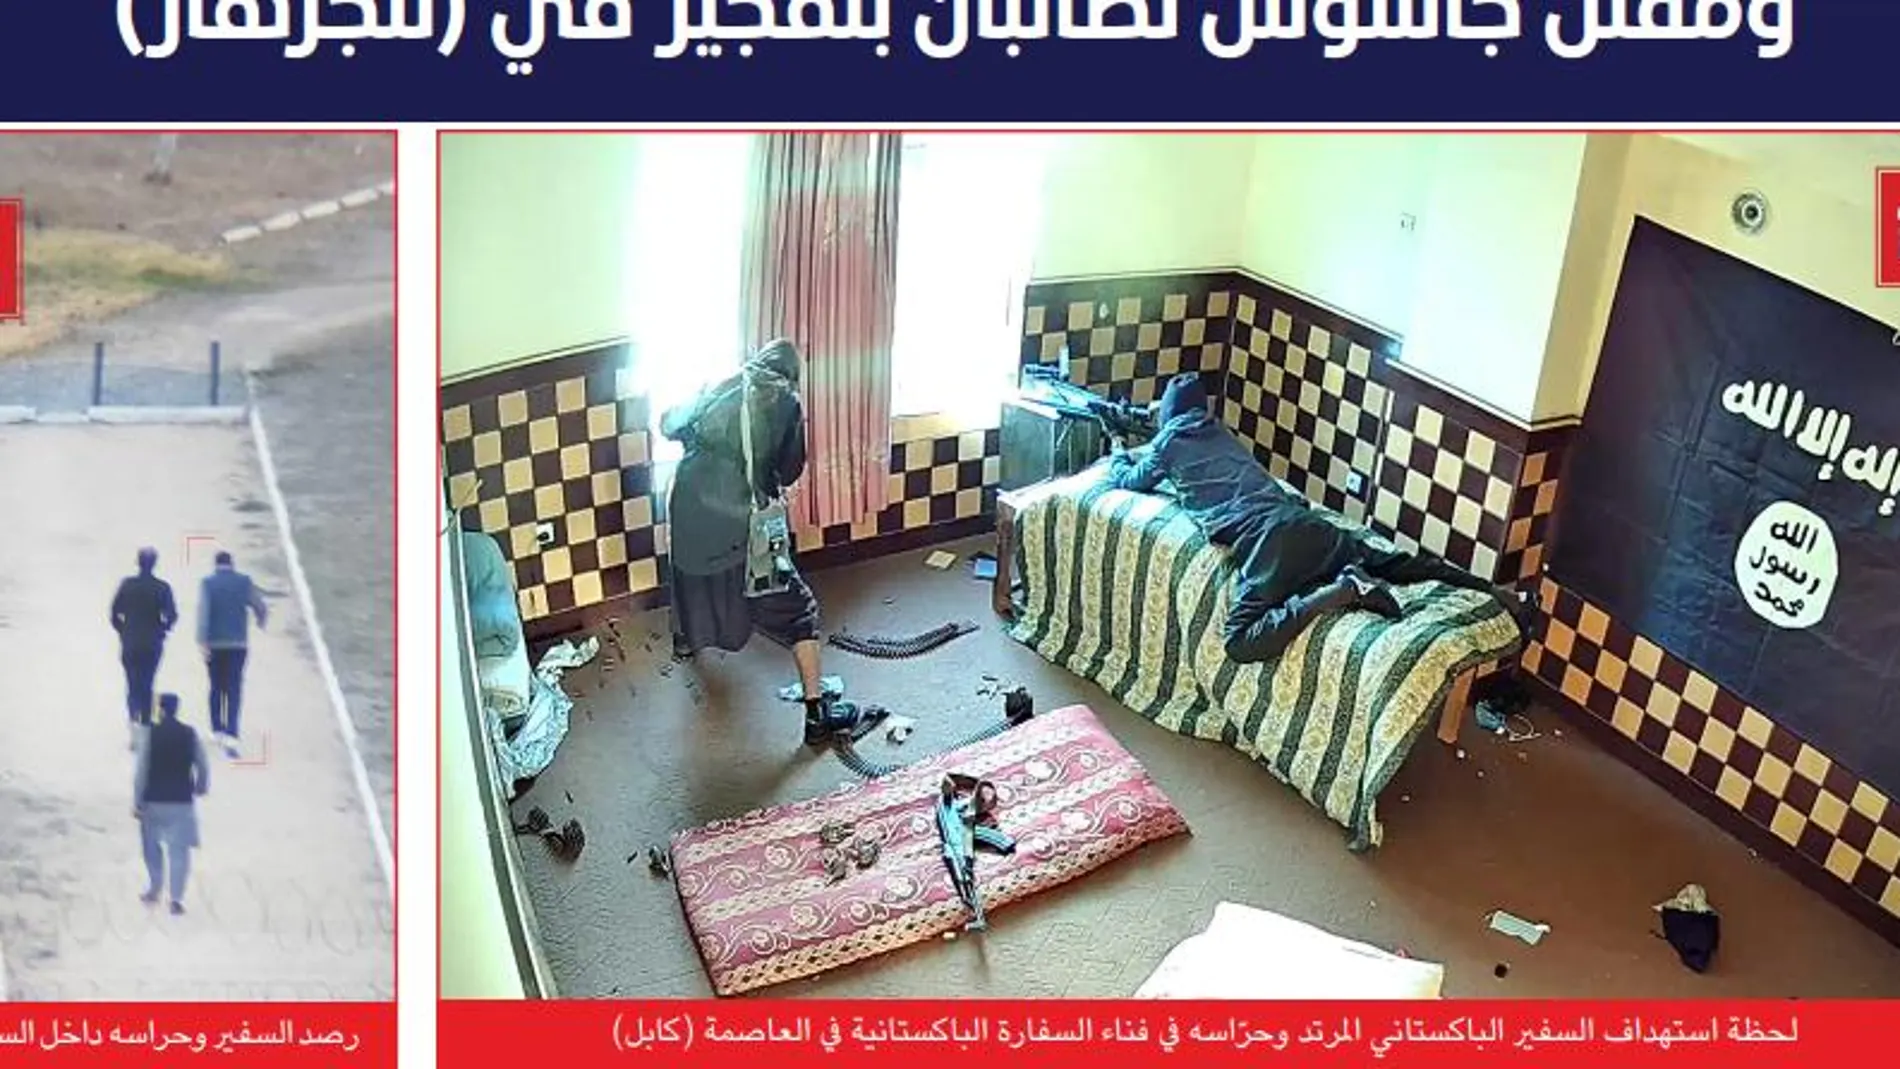 Imagen de los francotiradores del Estado Islámico (Naba)